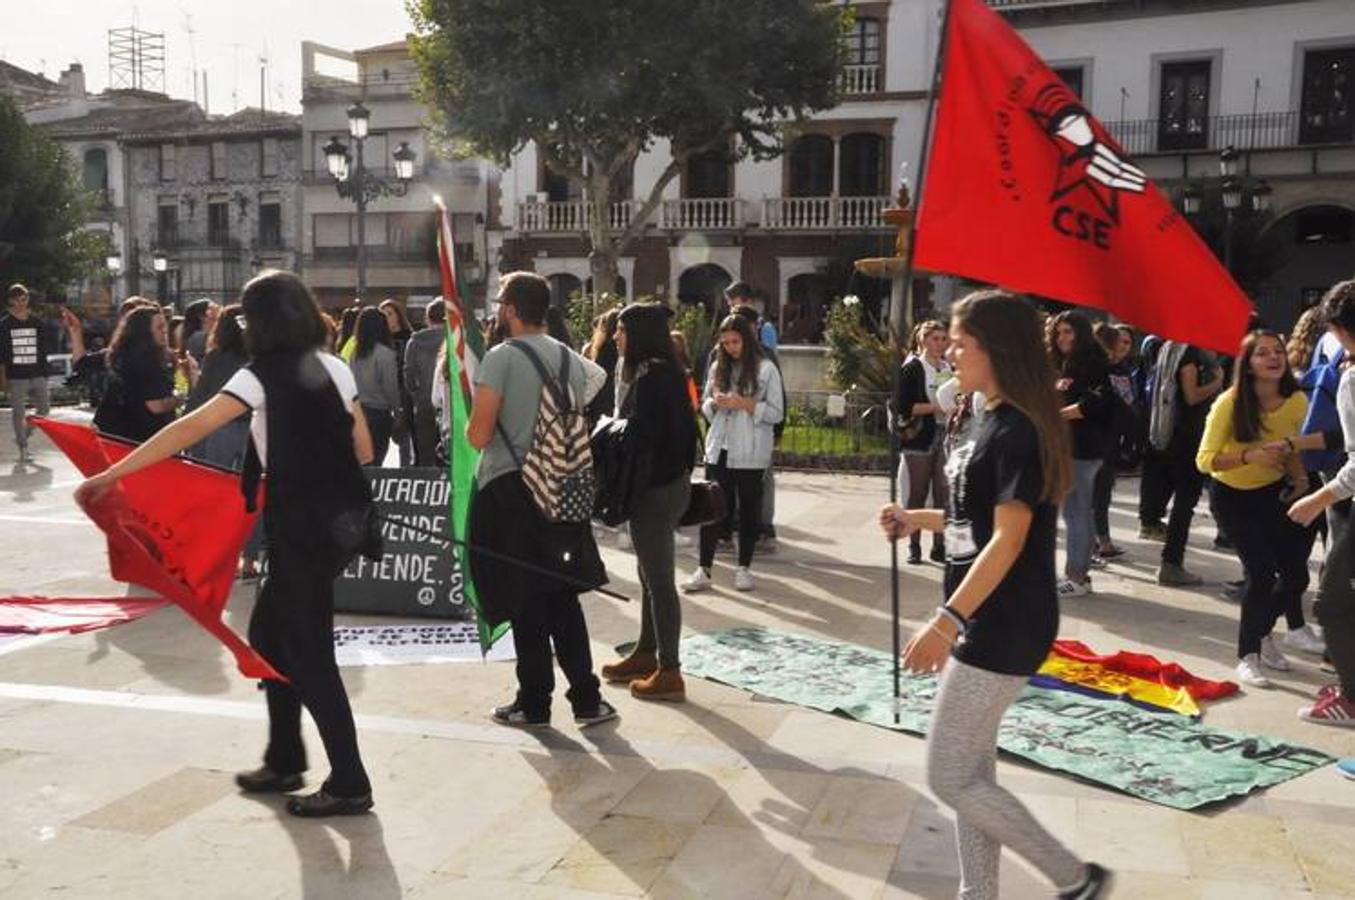 Medio millar de alumnos protestan en Baza contra la LOMCE